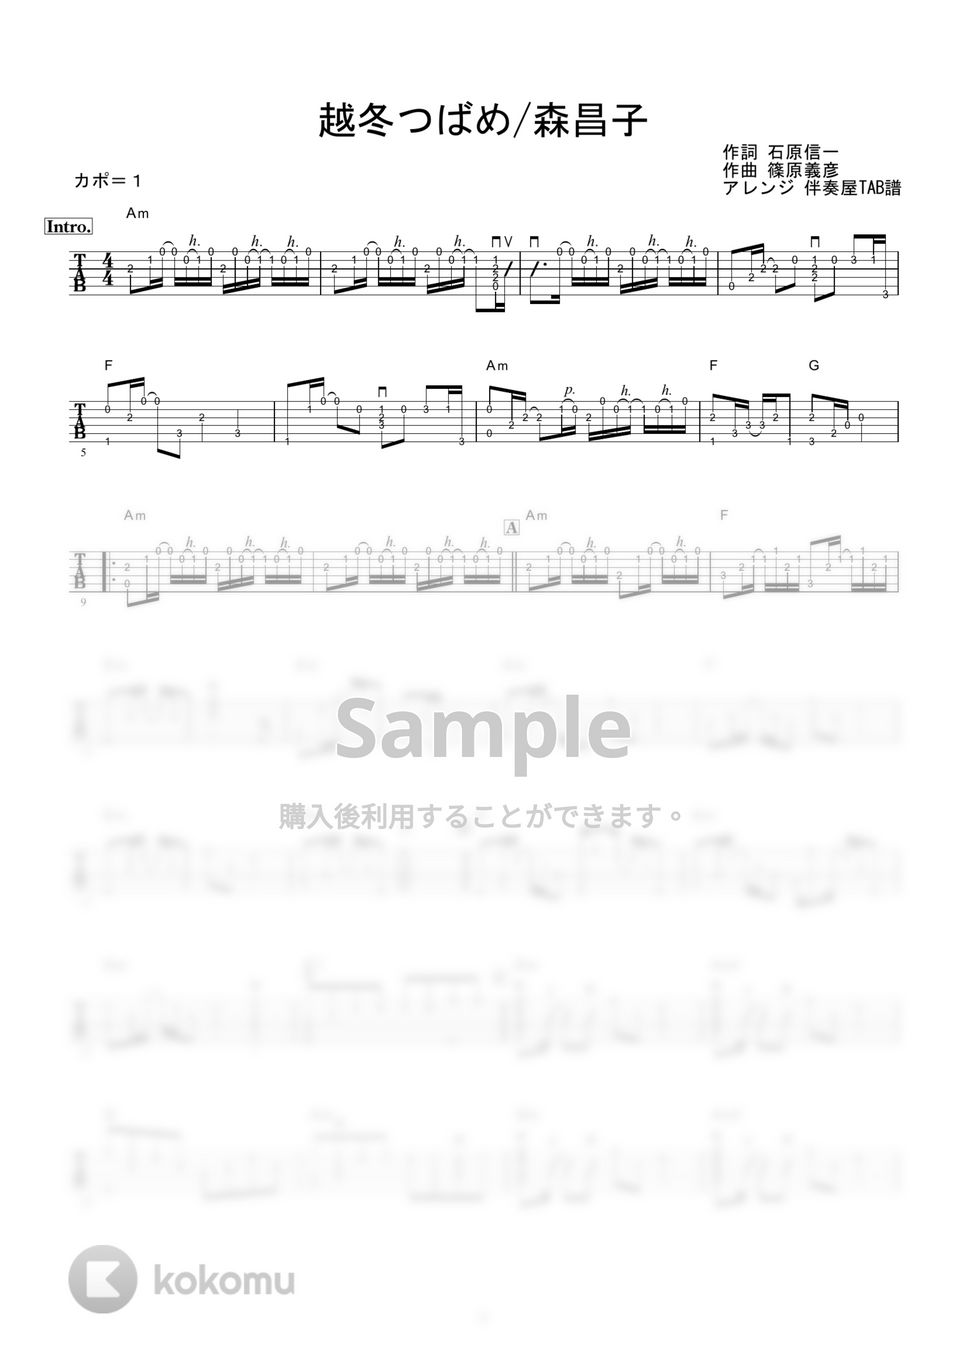 森昌子 - 越冬つばめ (ギター伴奏/イントロ・間奏ソロギター) by 伴奏屋TAB譜